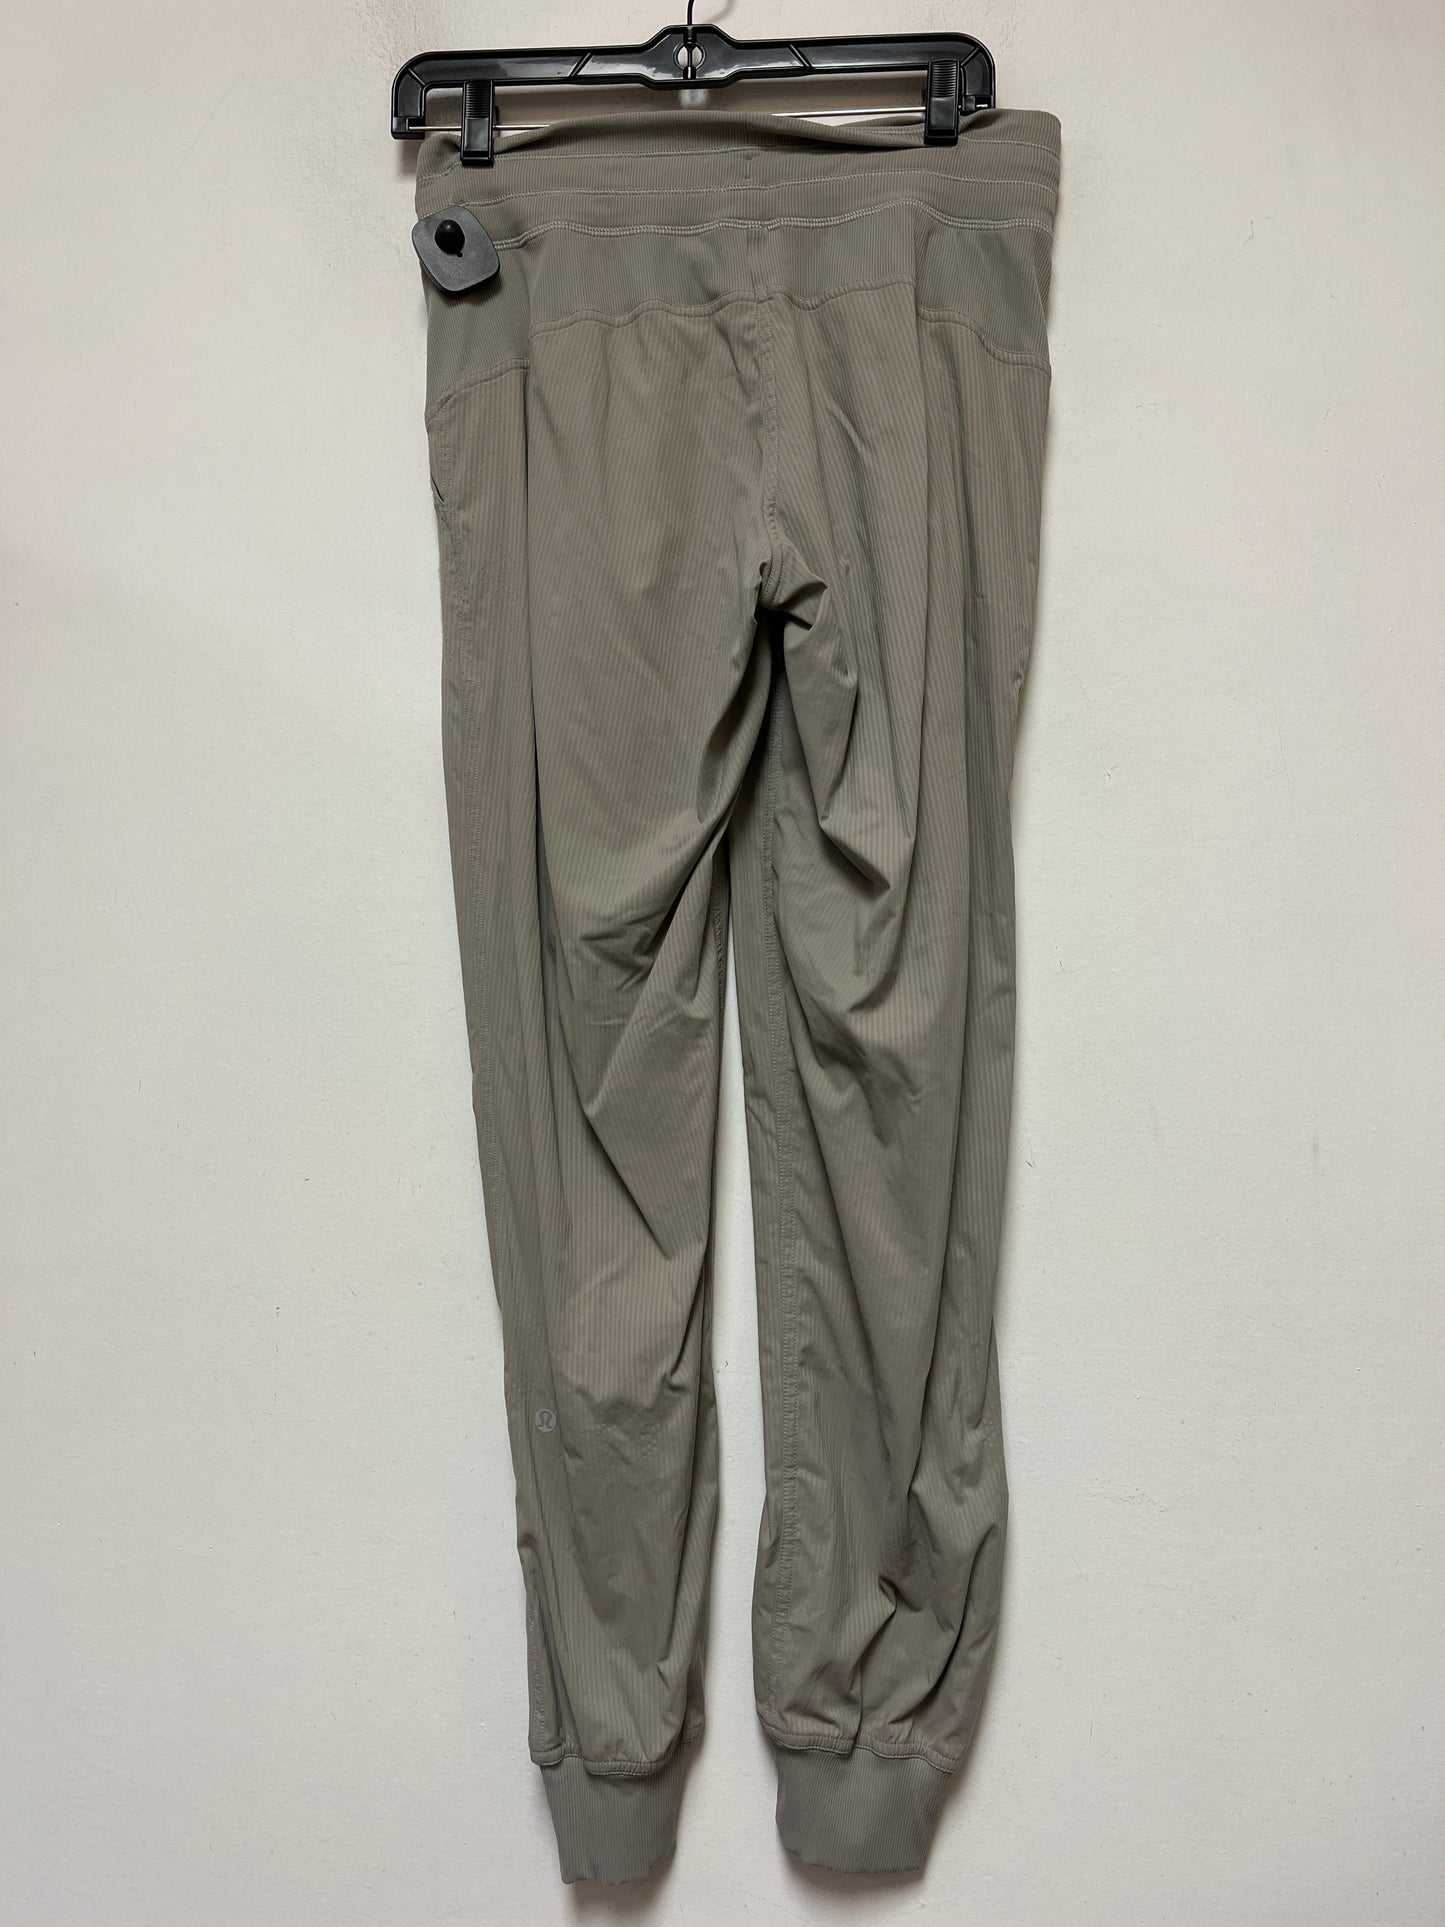 Grey Athletic Pants Lululemon, Size 6